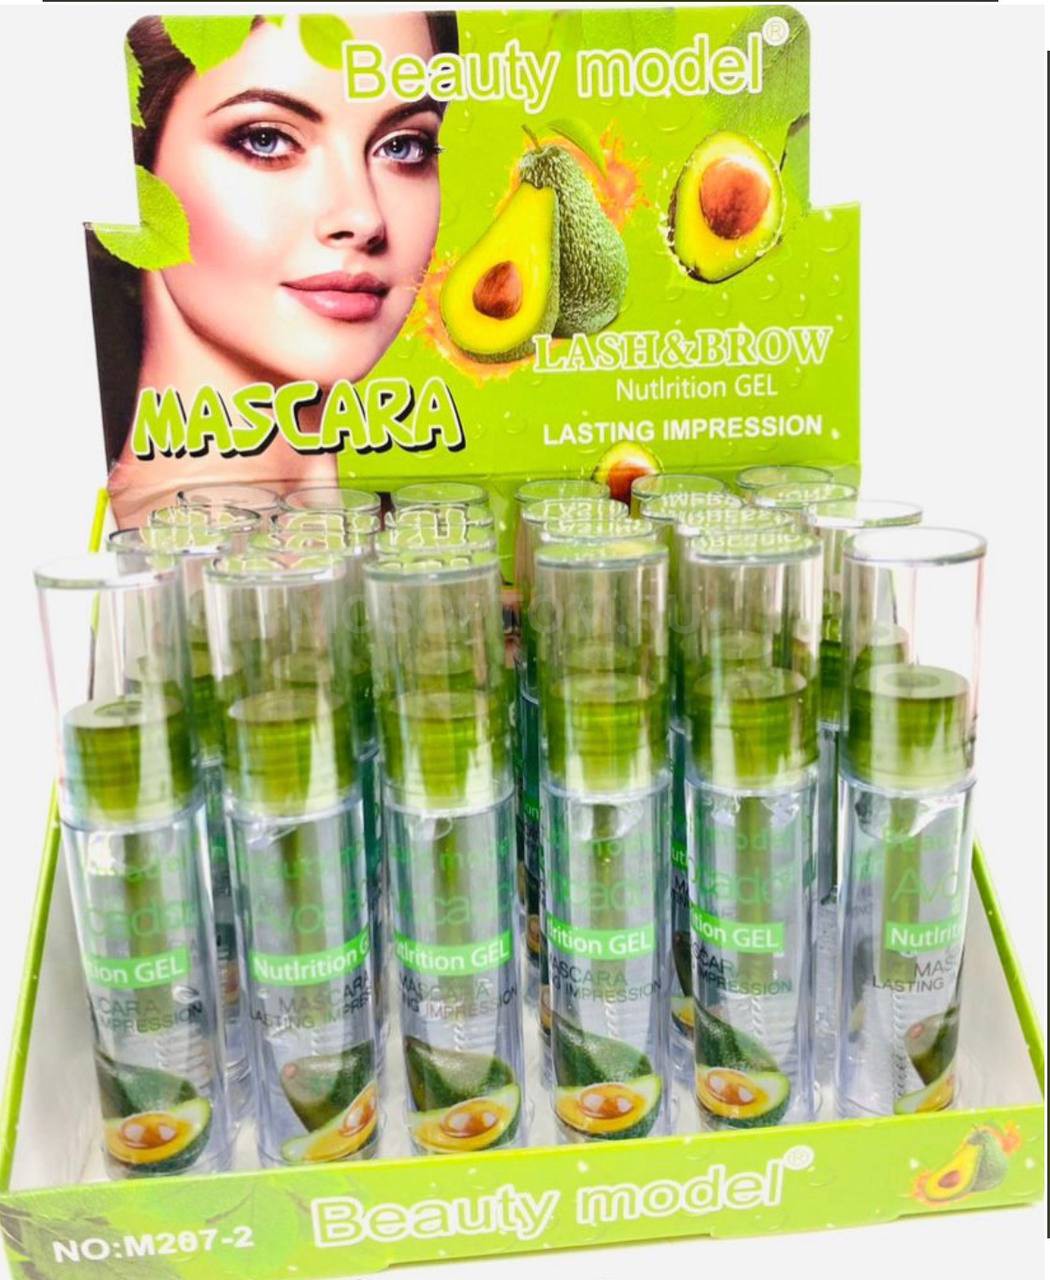 Фиксирующий гель для бровей и ресниц с авокадо Beauty model Mascara Lash&Brow оптом